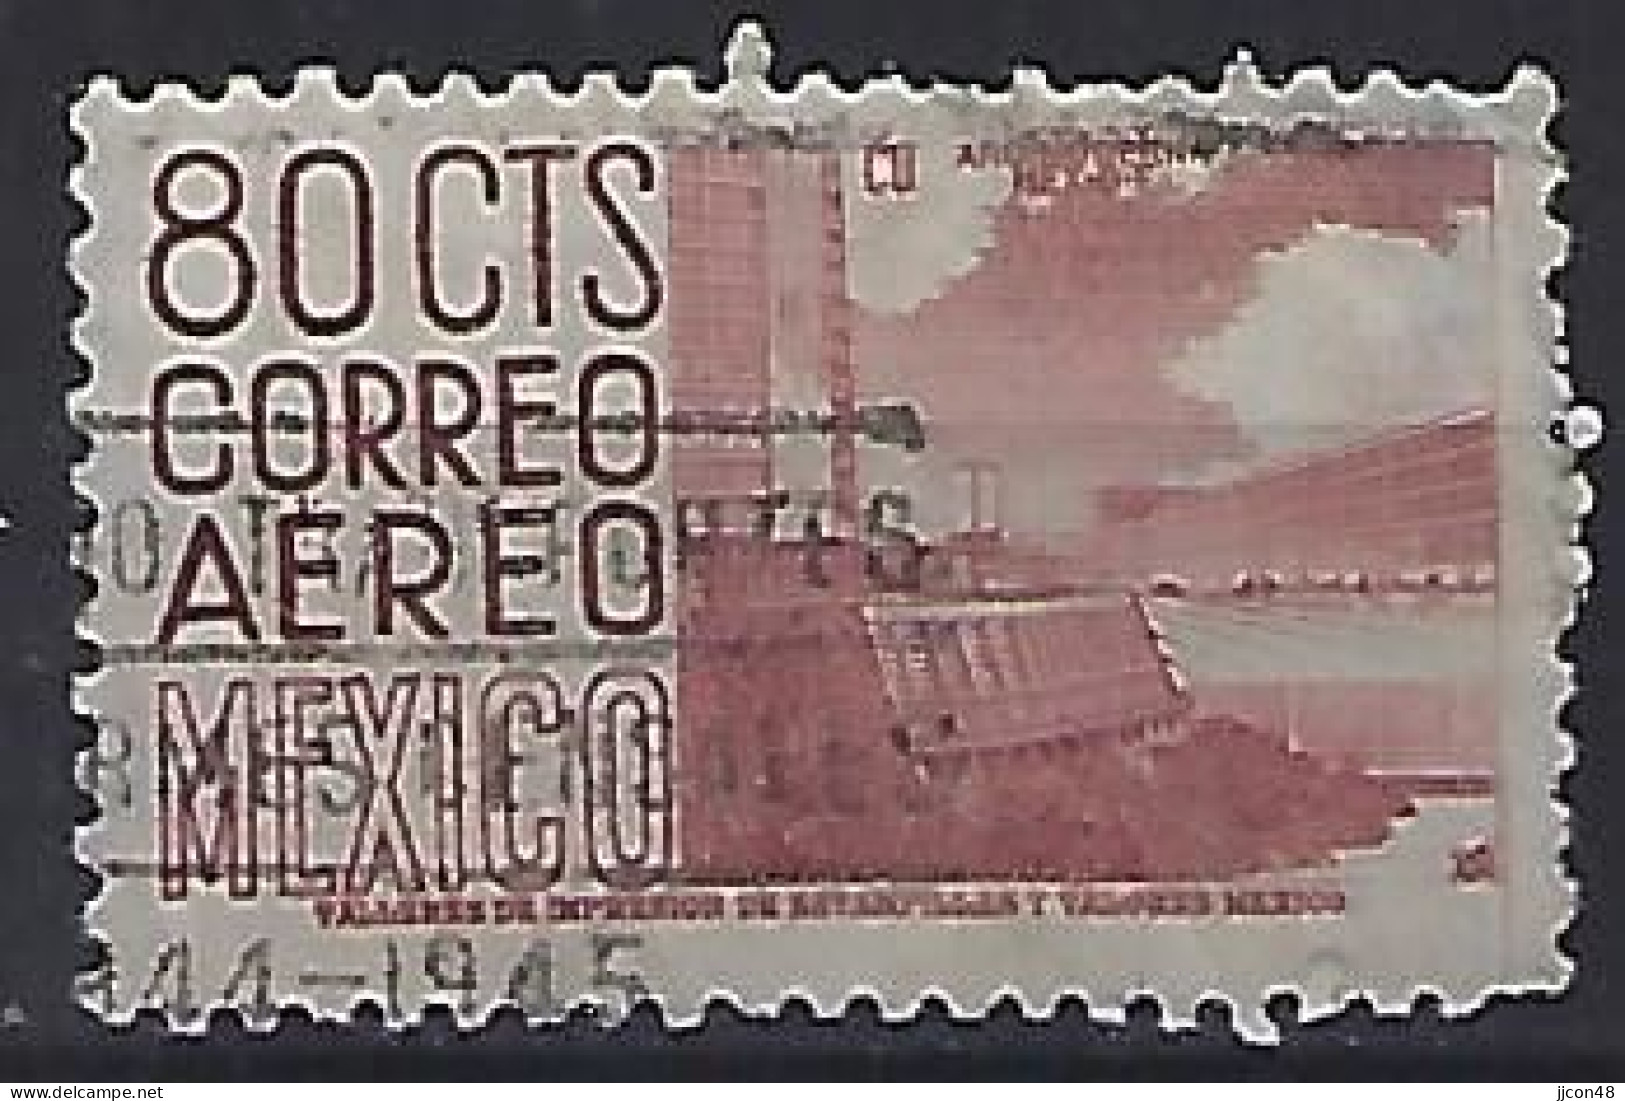 Mexico 1950-53  Einheimische Bilder (o) Mi.987 (issued 1952 - Mexiko